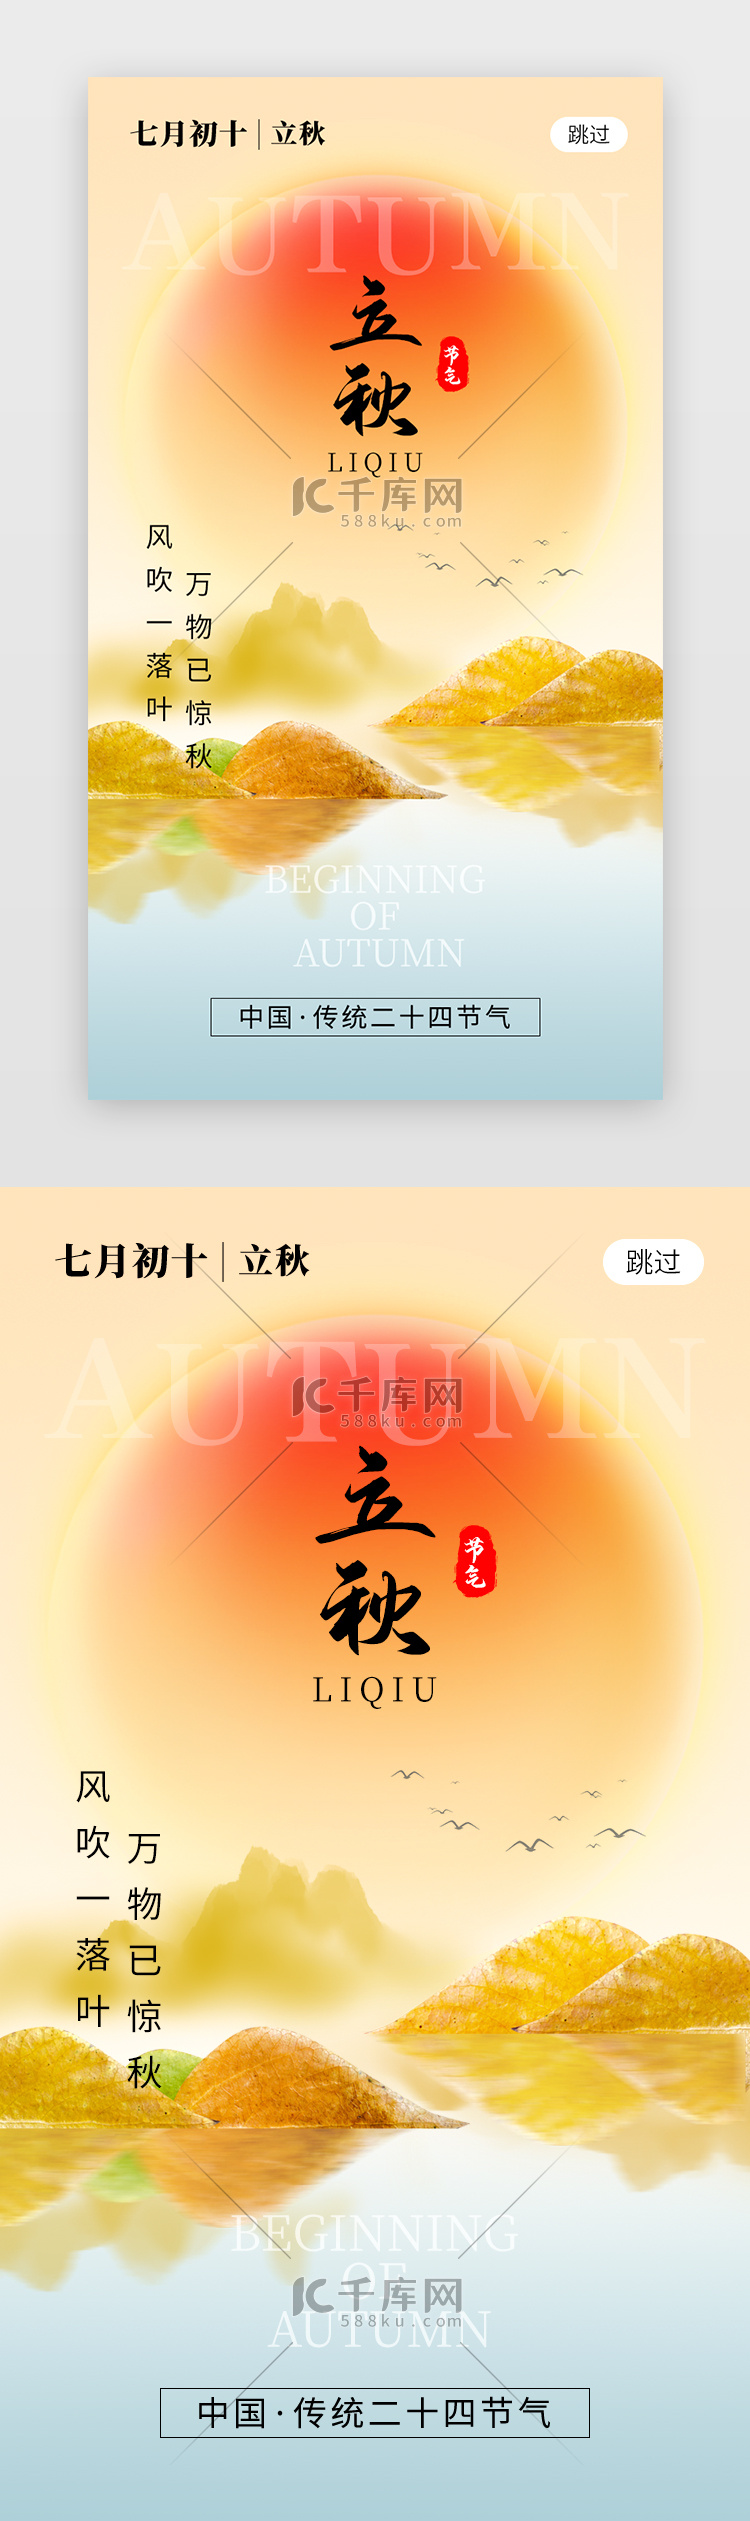 二十四节气立秋app闪屏创意橙黄色太阳